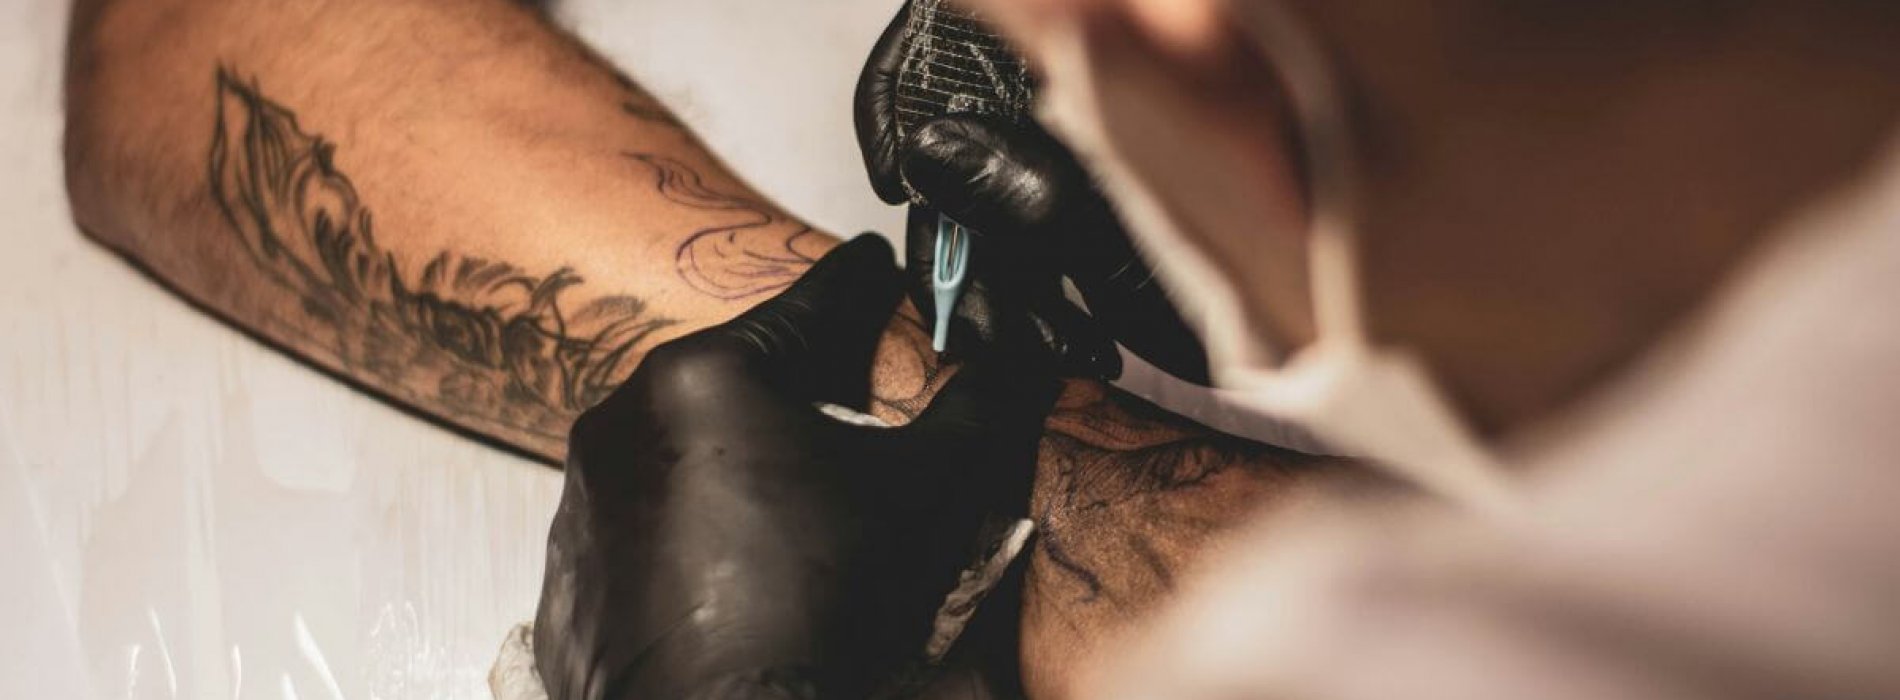 Szukasz studia tatuażu w Warszawie? Sprawdź, czym się kierować przy wyborze